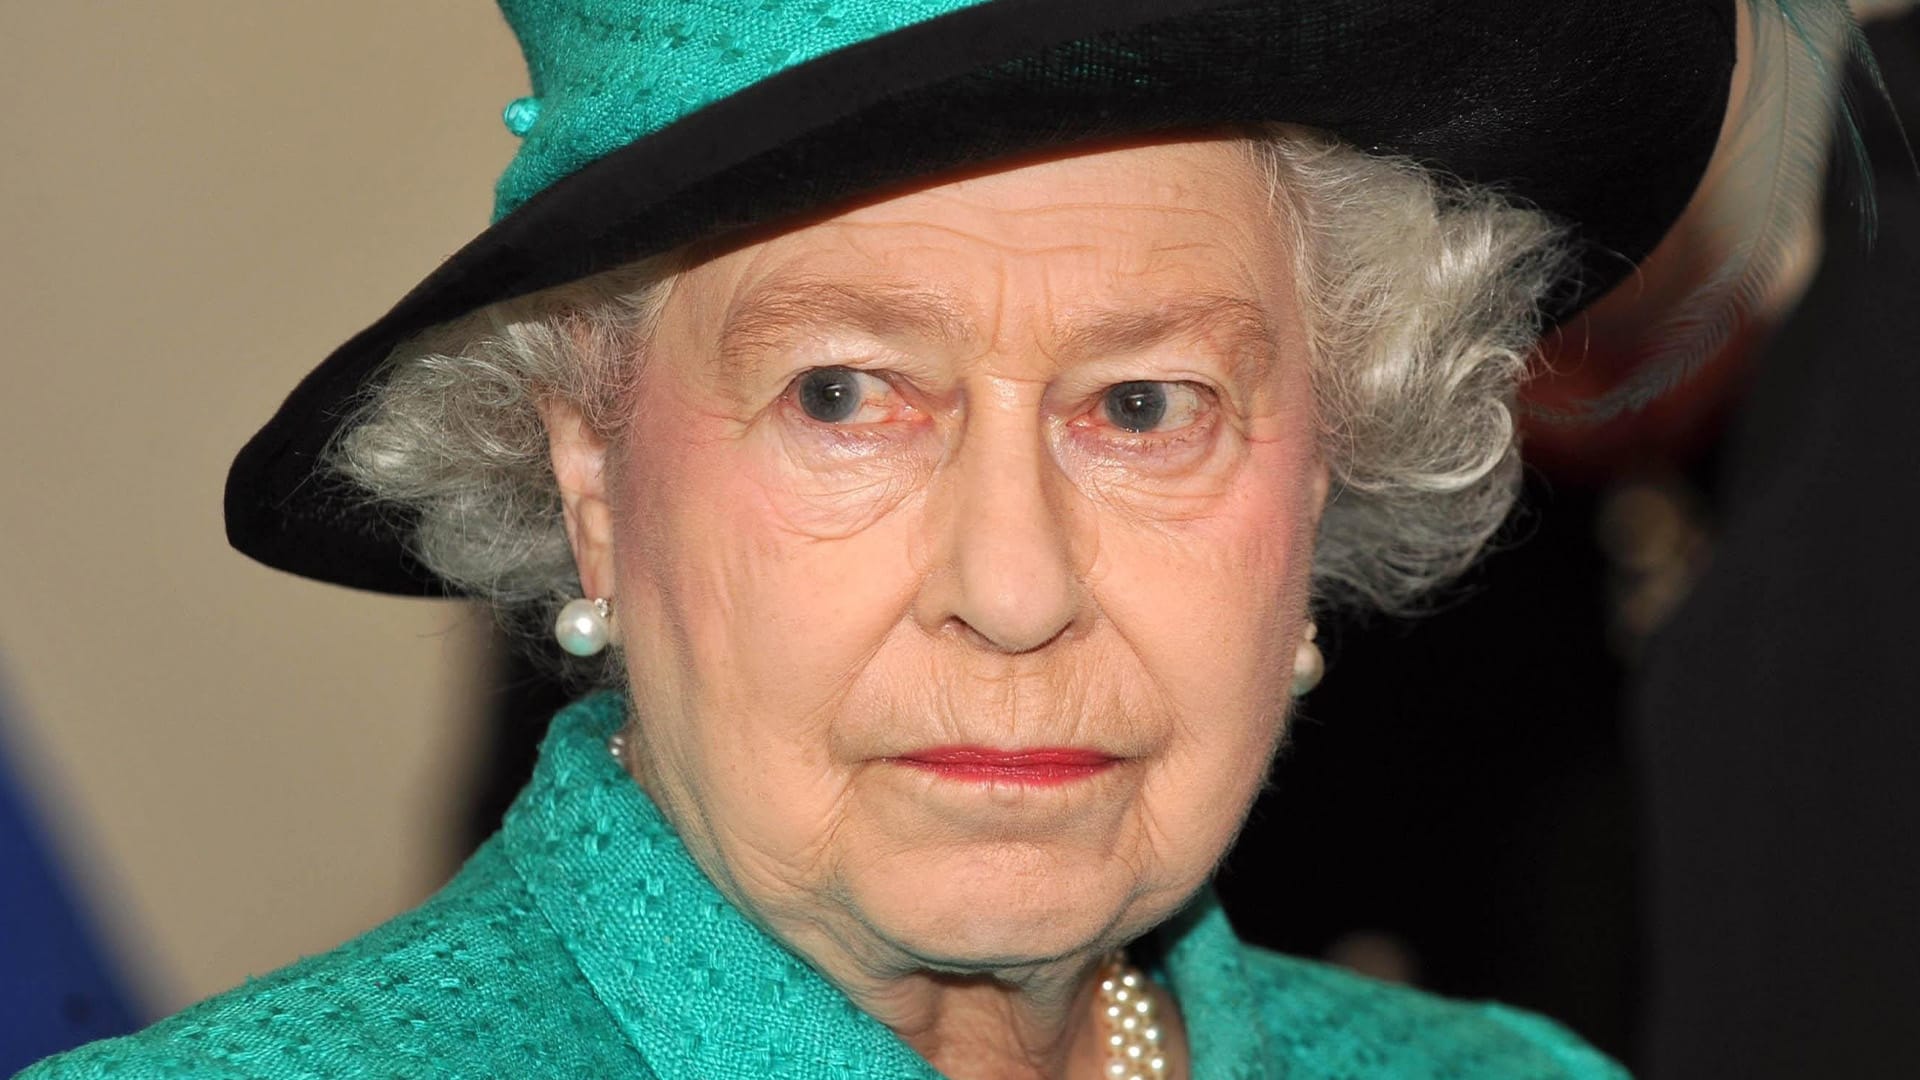 Alžběta II. byla britskou královnou celých 70 let. Stala se tak nejdéle sloužícím panovníkem v Británii a nejdéle vládnoucí ženou na světě.